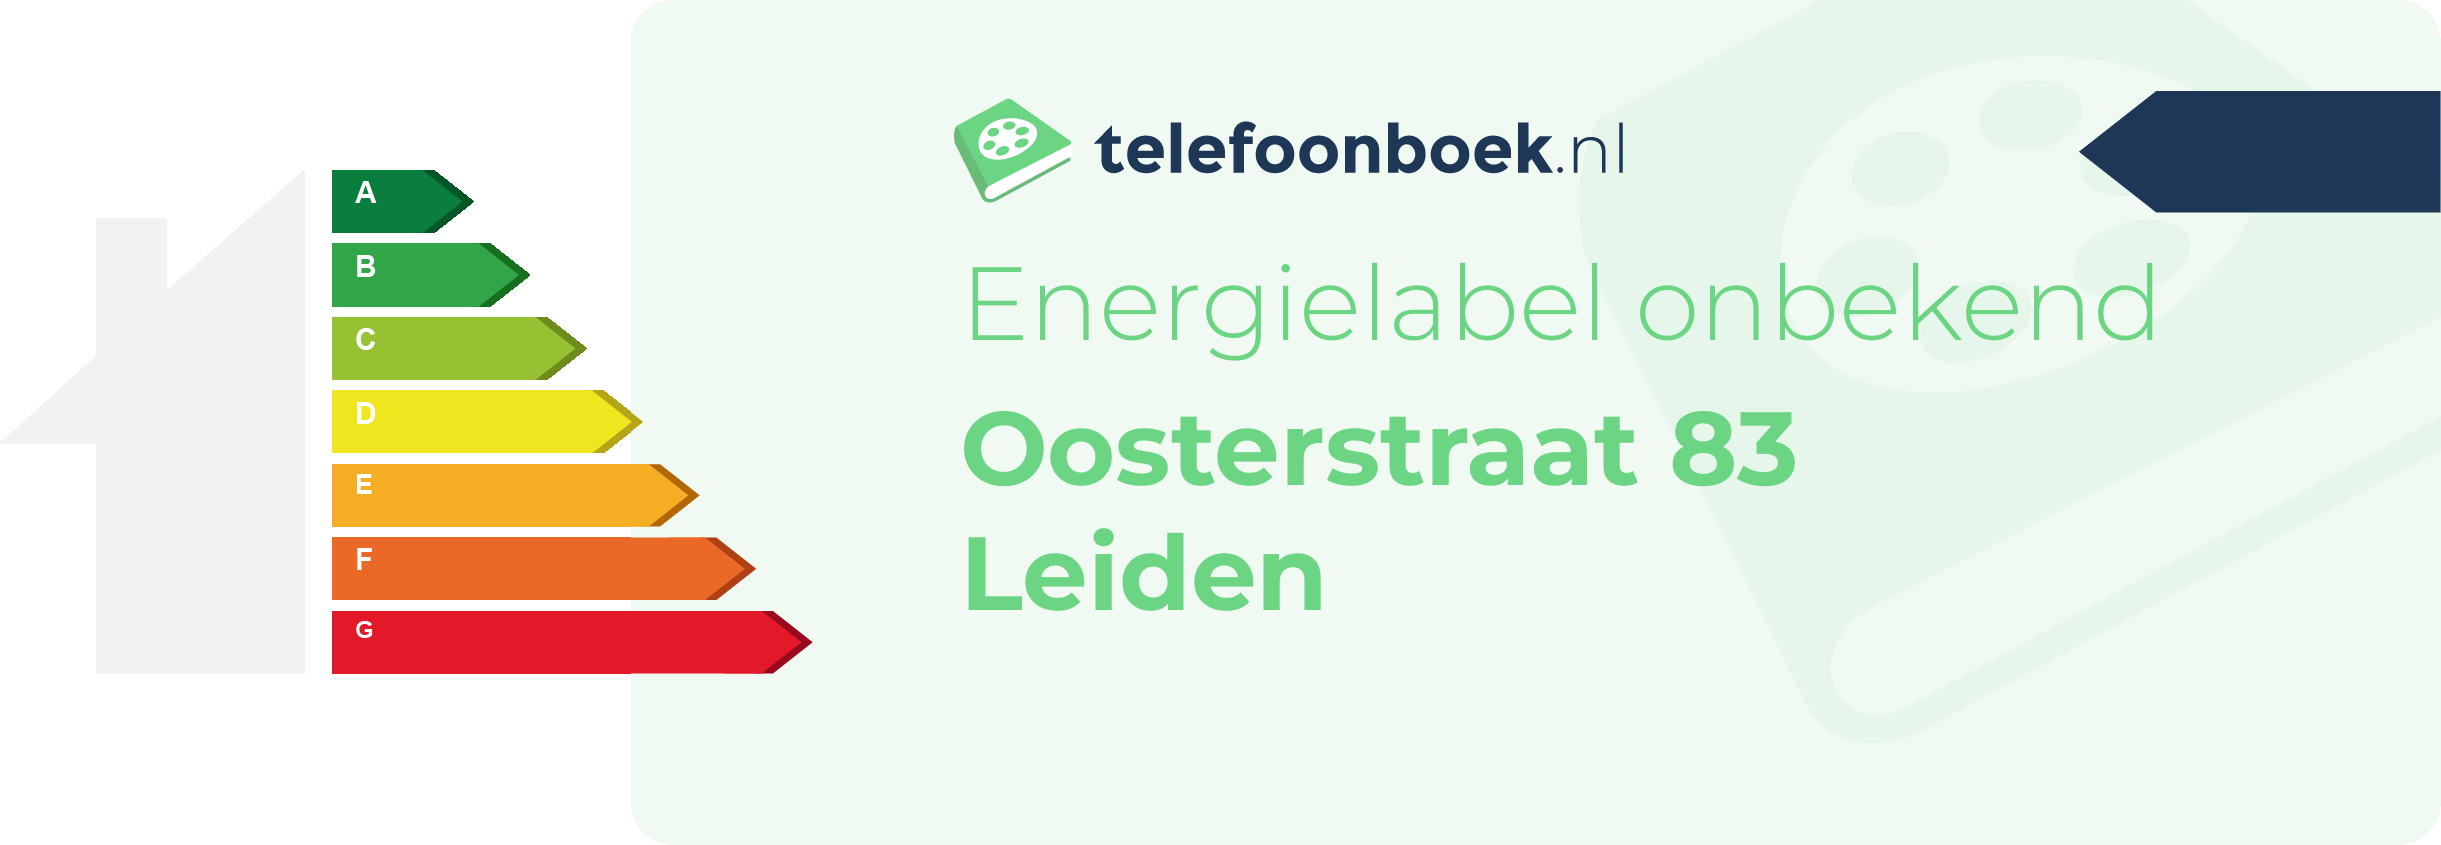 Energielabel Oosterstraat 83 Leiden